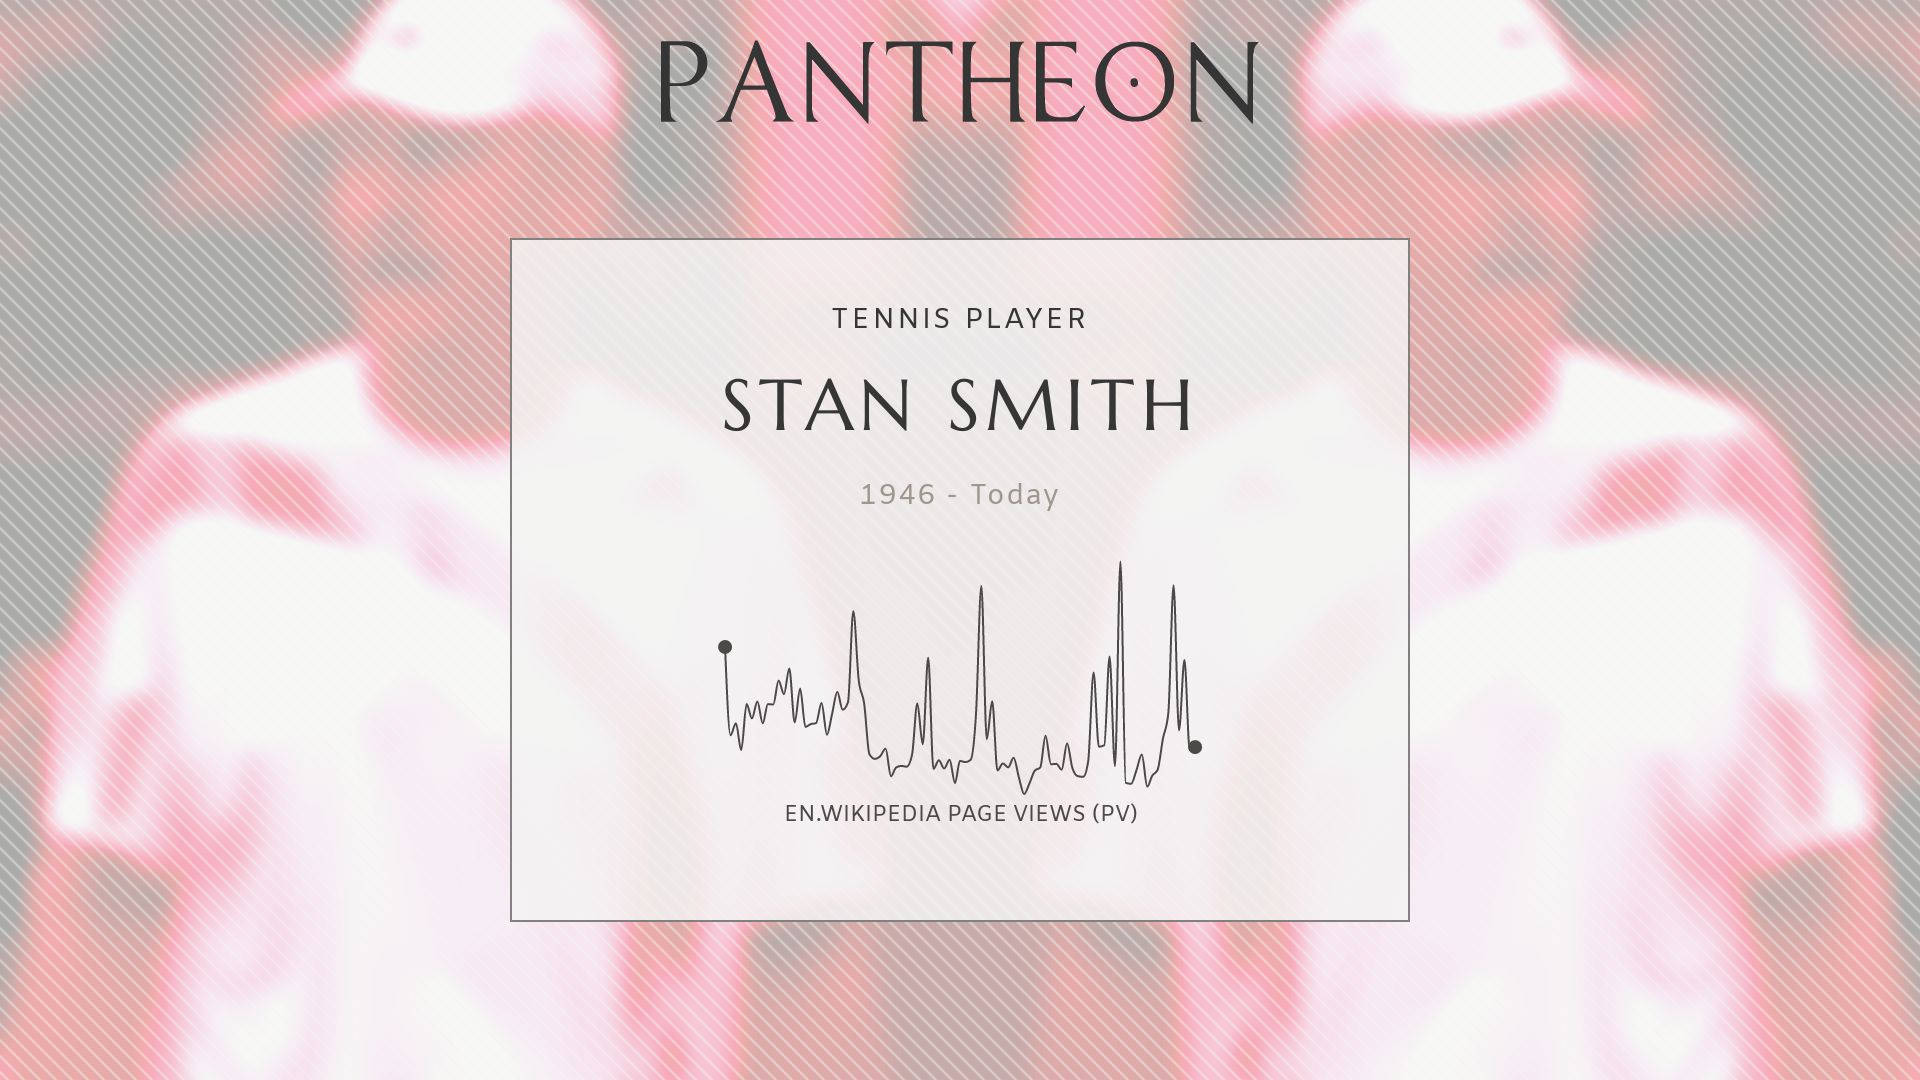 Stan Smith Biography Wallpaper